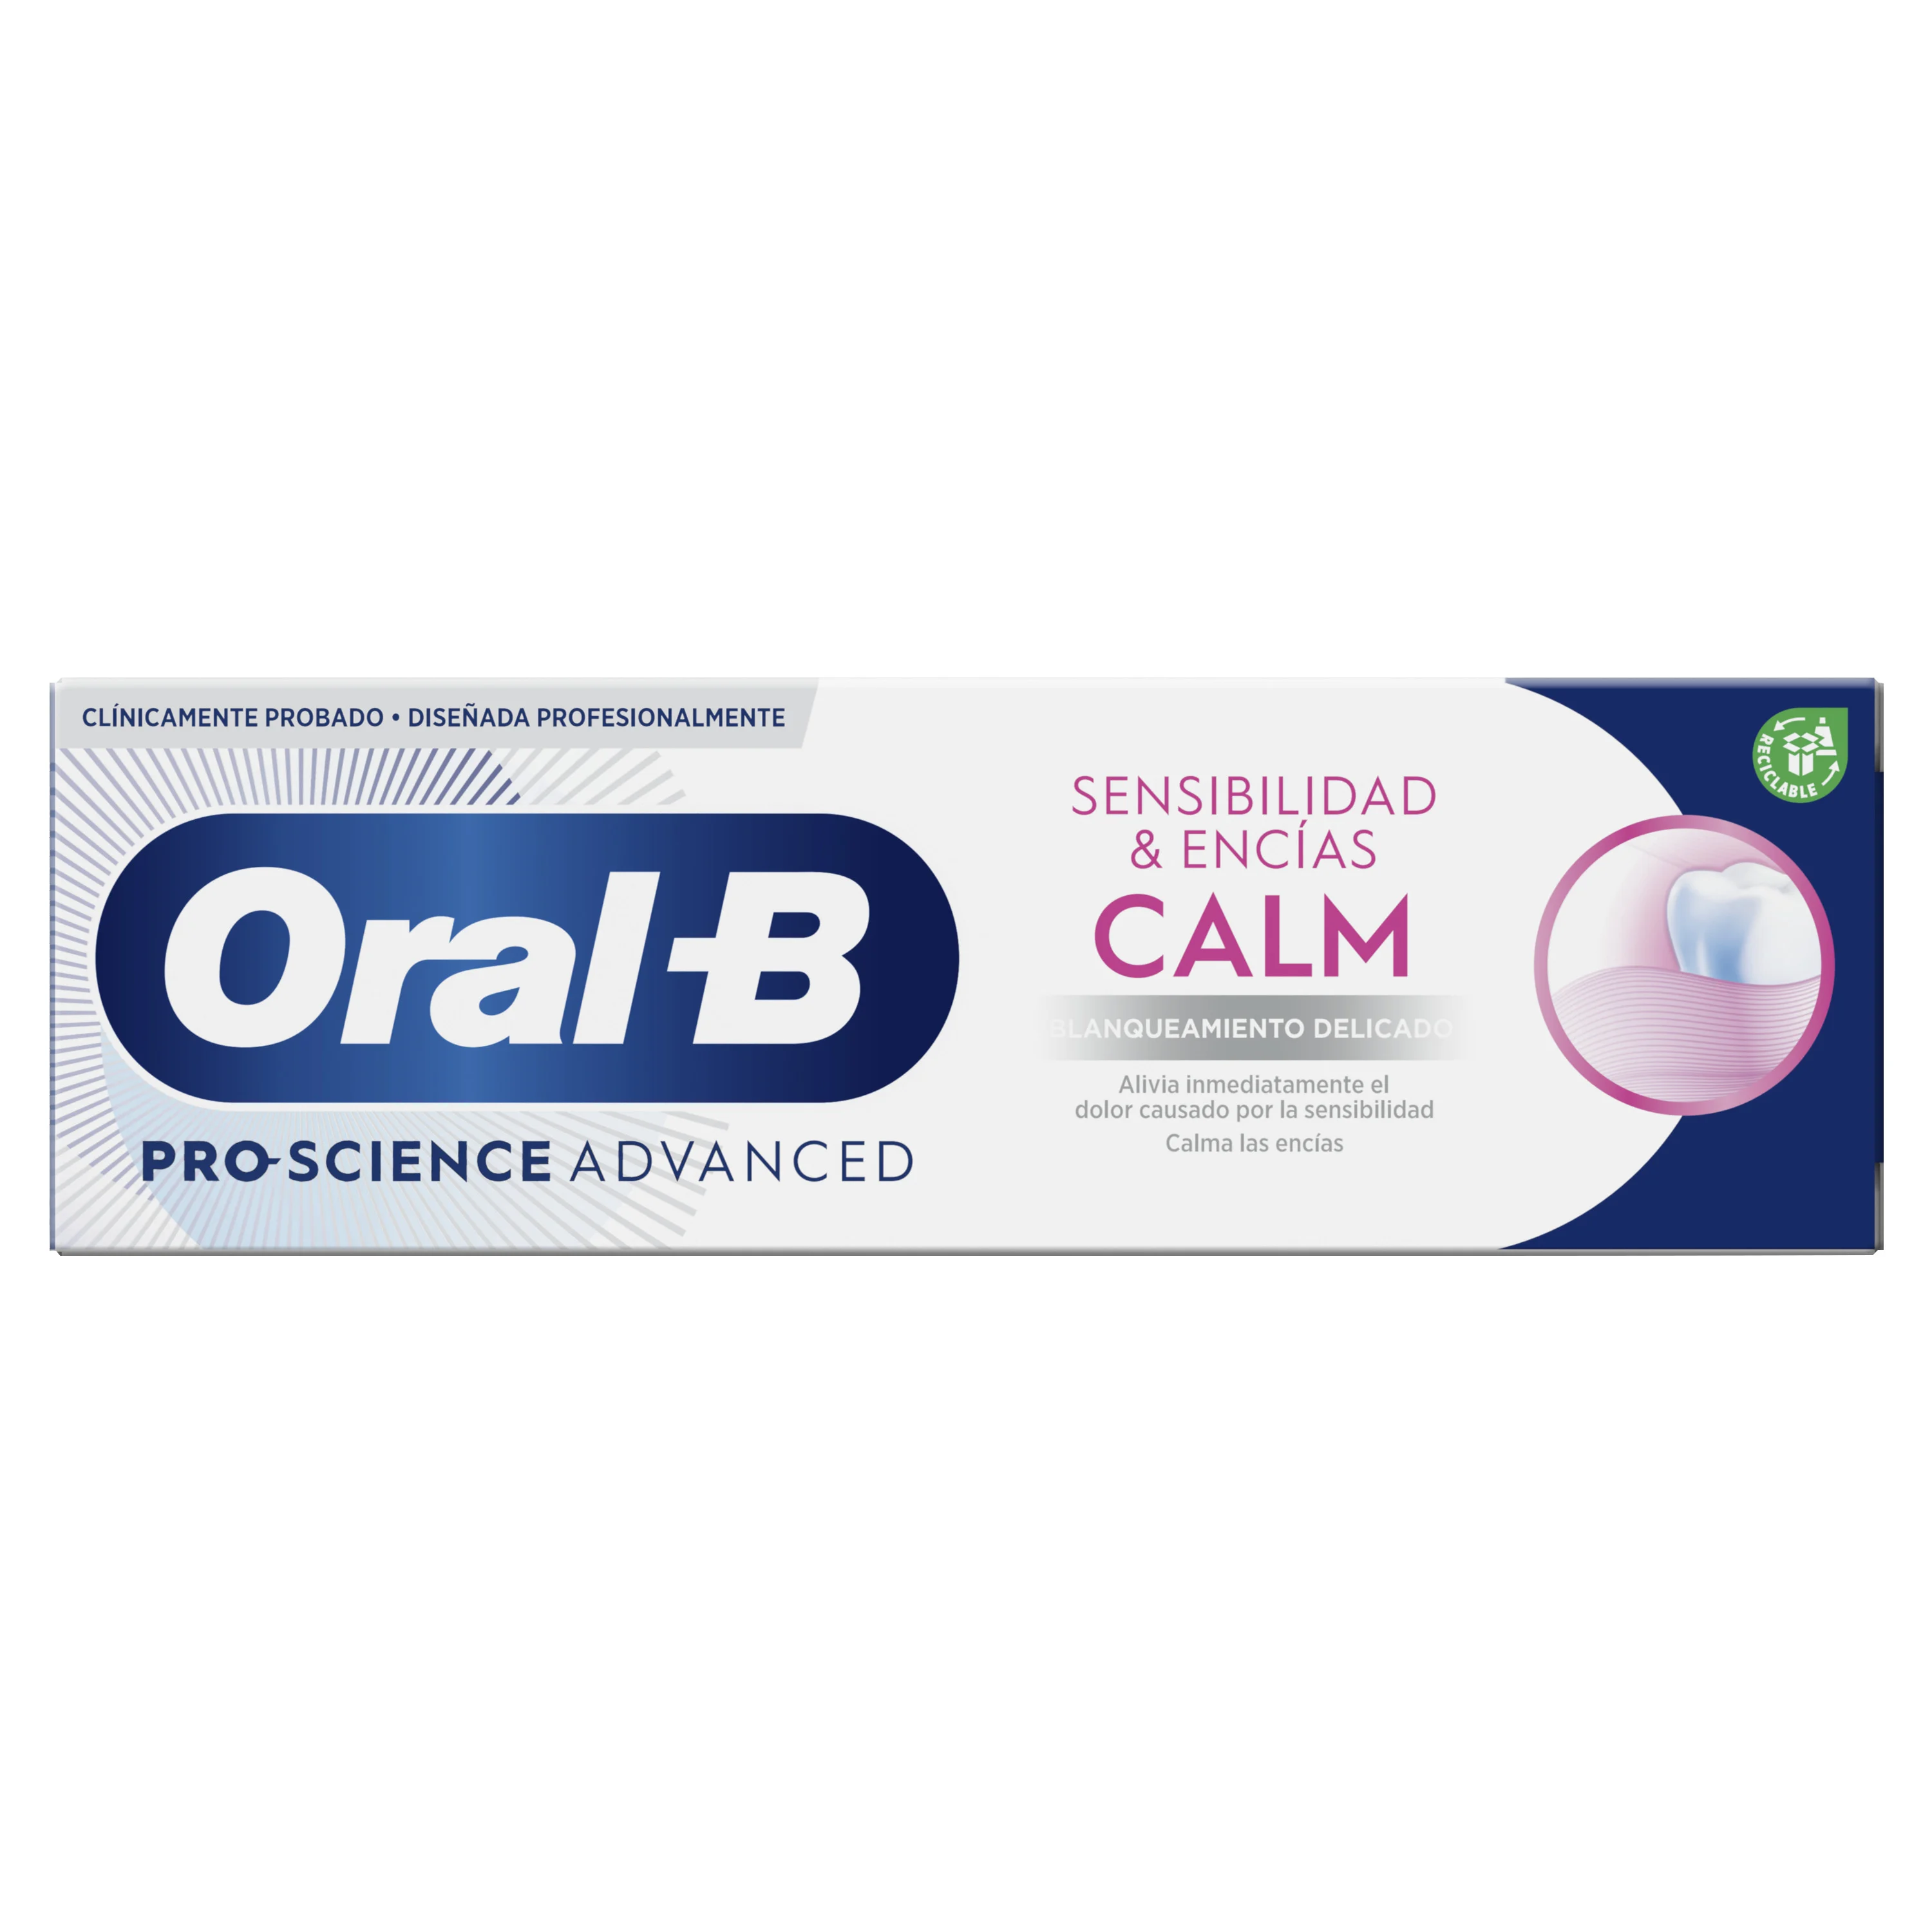 Oral-B Sensibilidad & Encías Calm Blanqueante Pasta Dentífrica - 1 